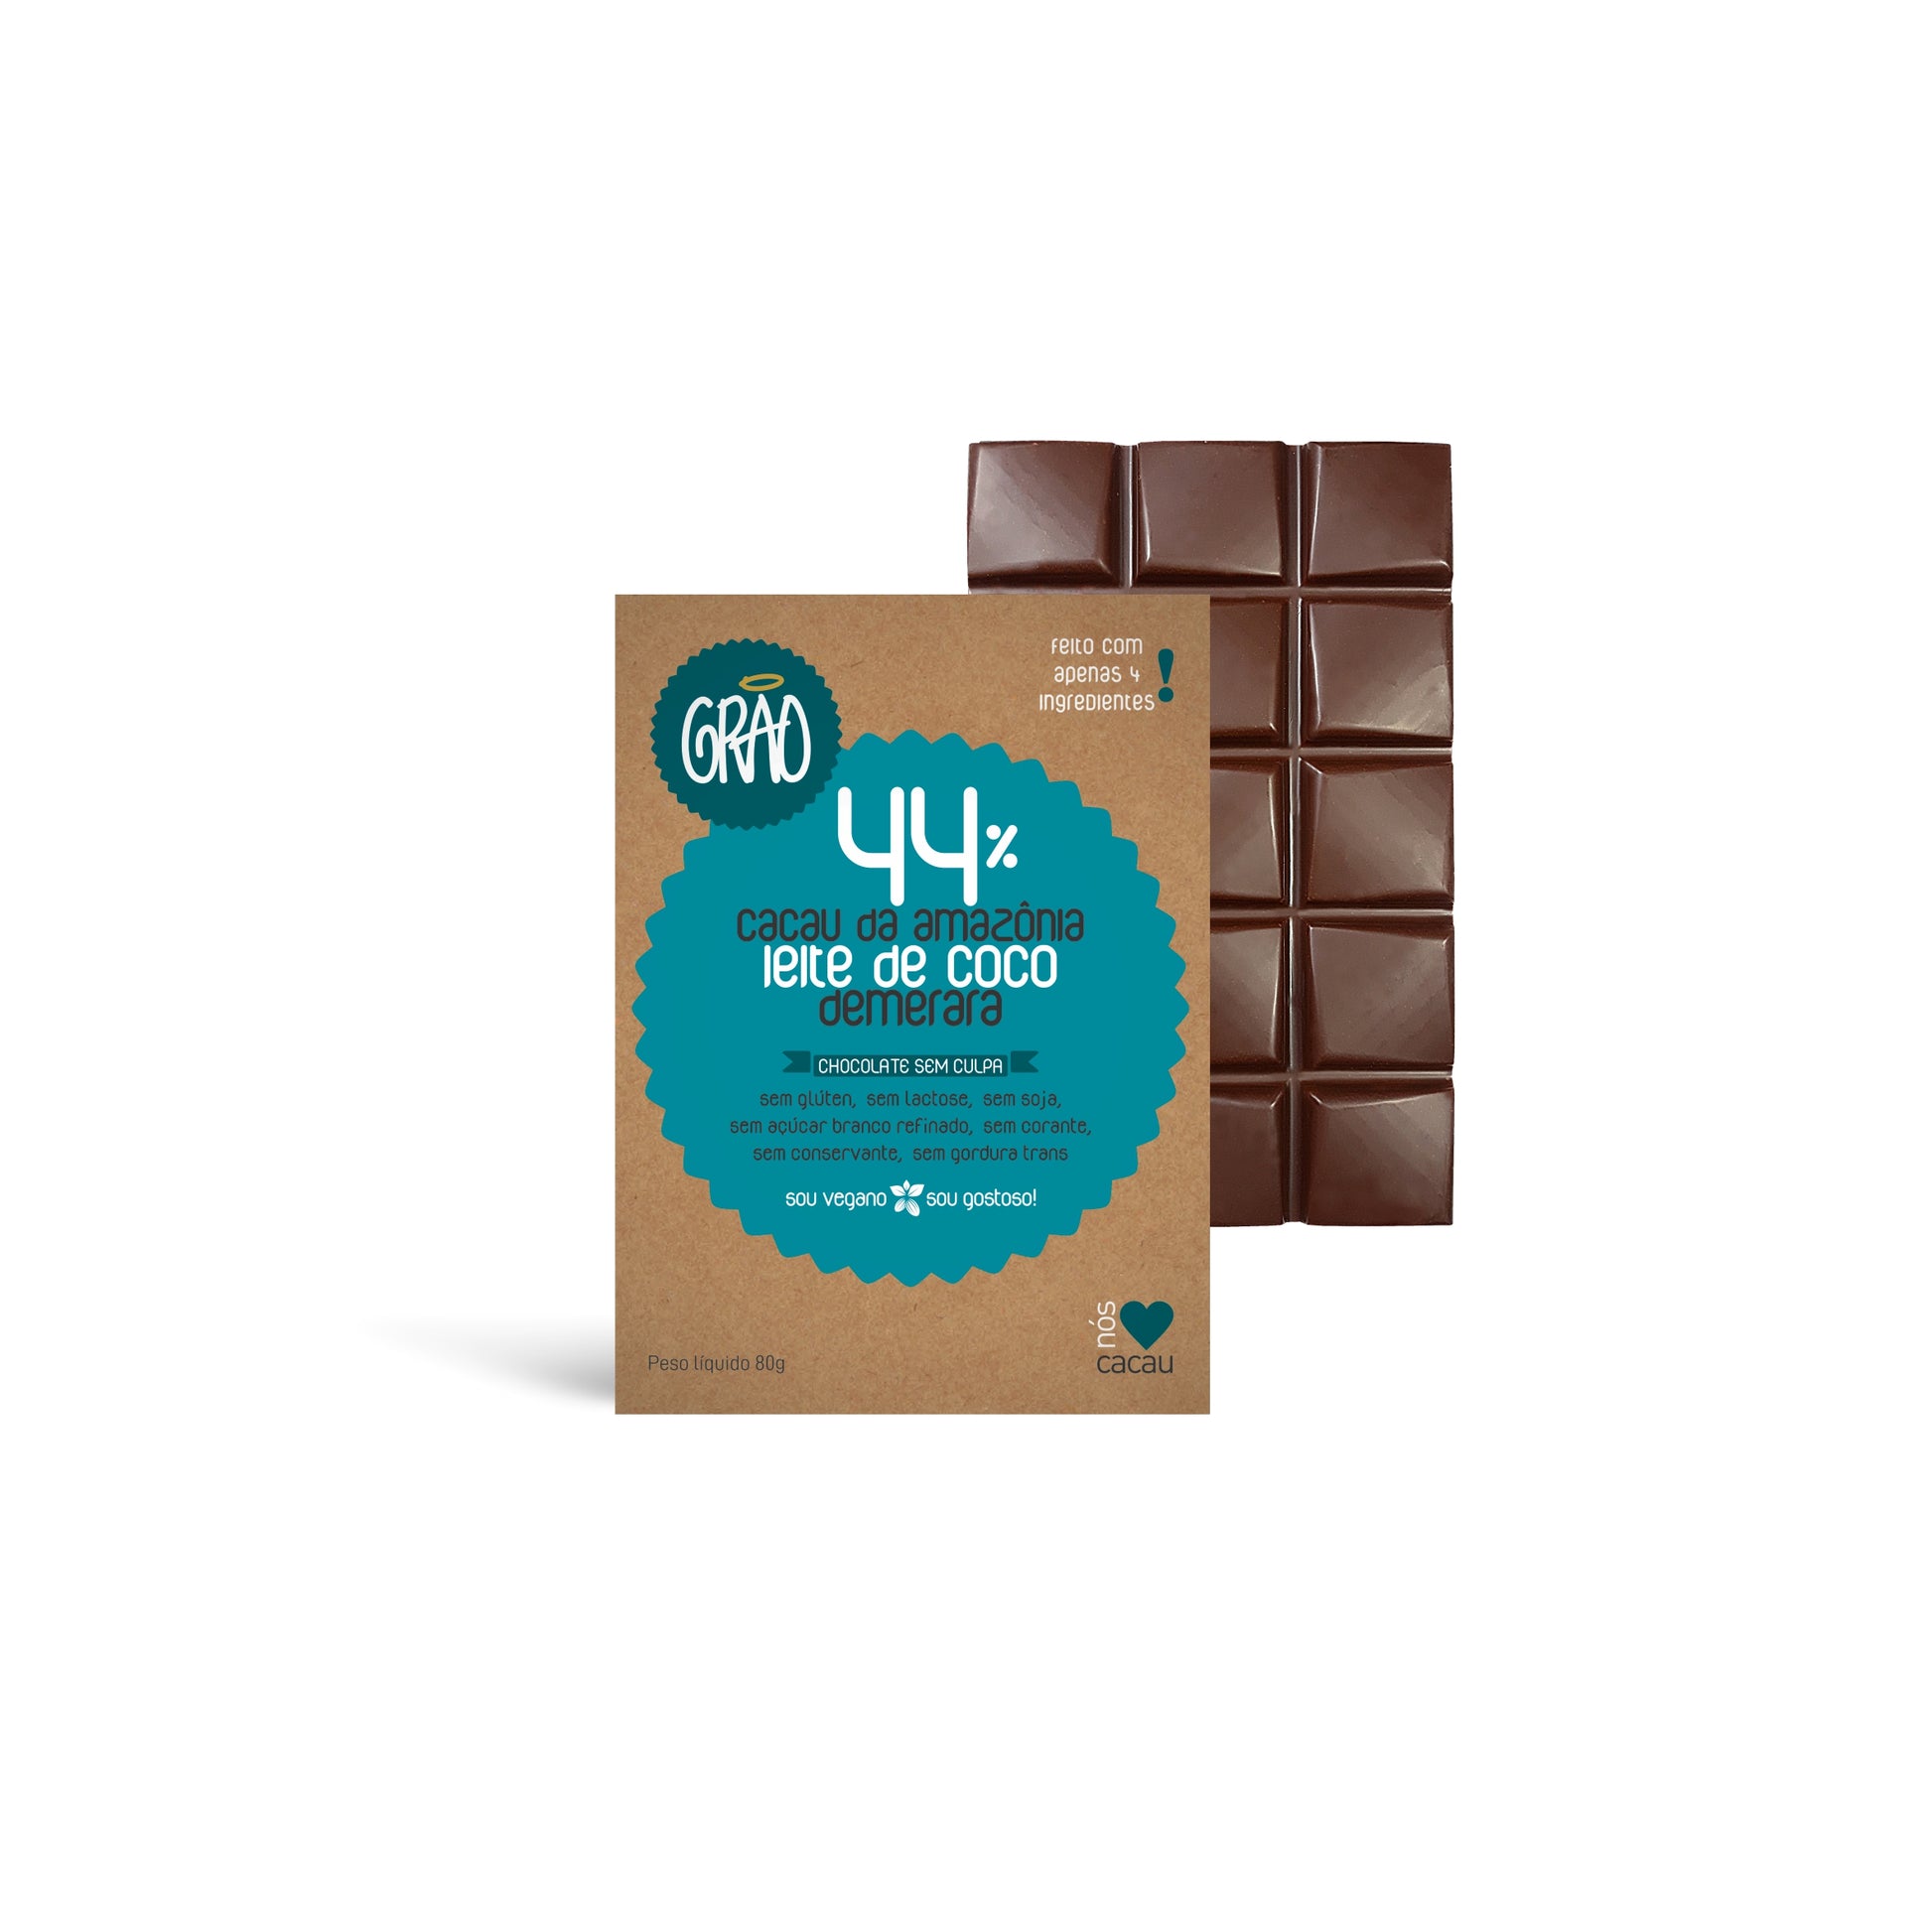 KIT C/ 4 BARRAS 44% AO LEITE DE COCO 80g cada – Grão Chocolates